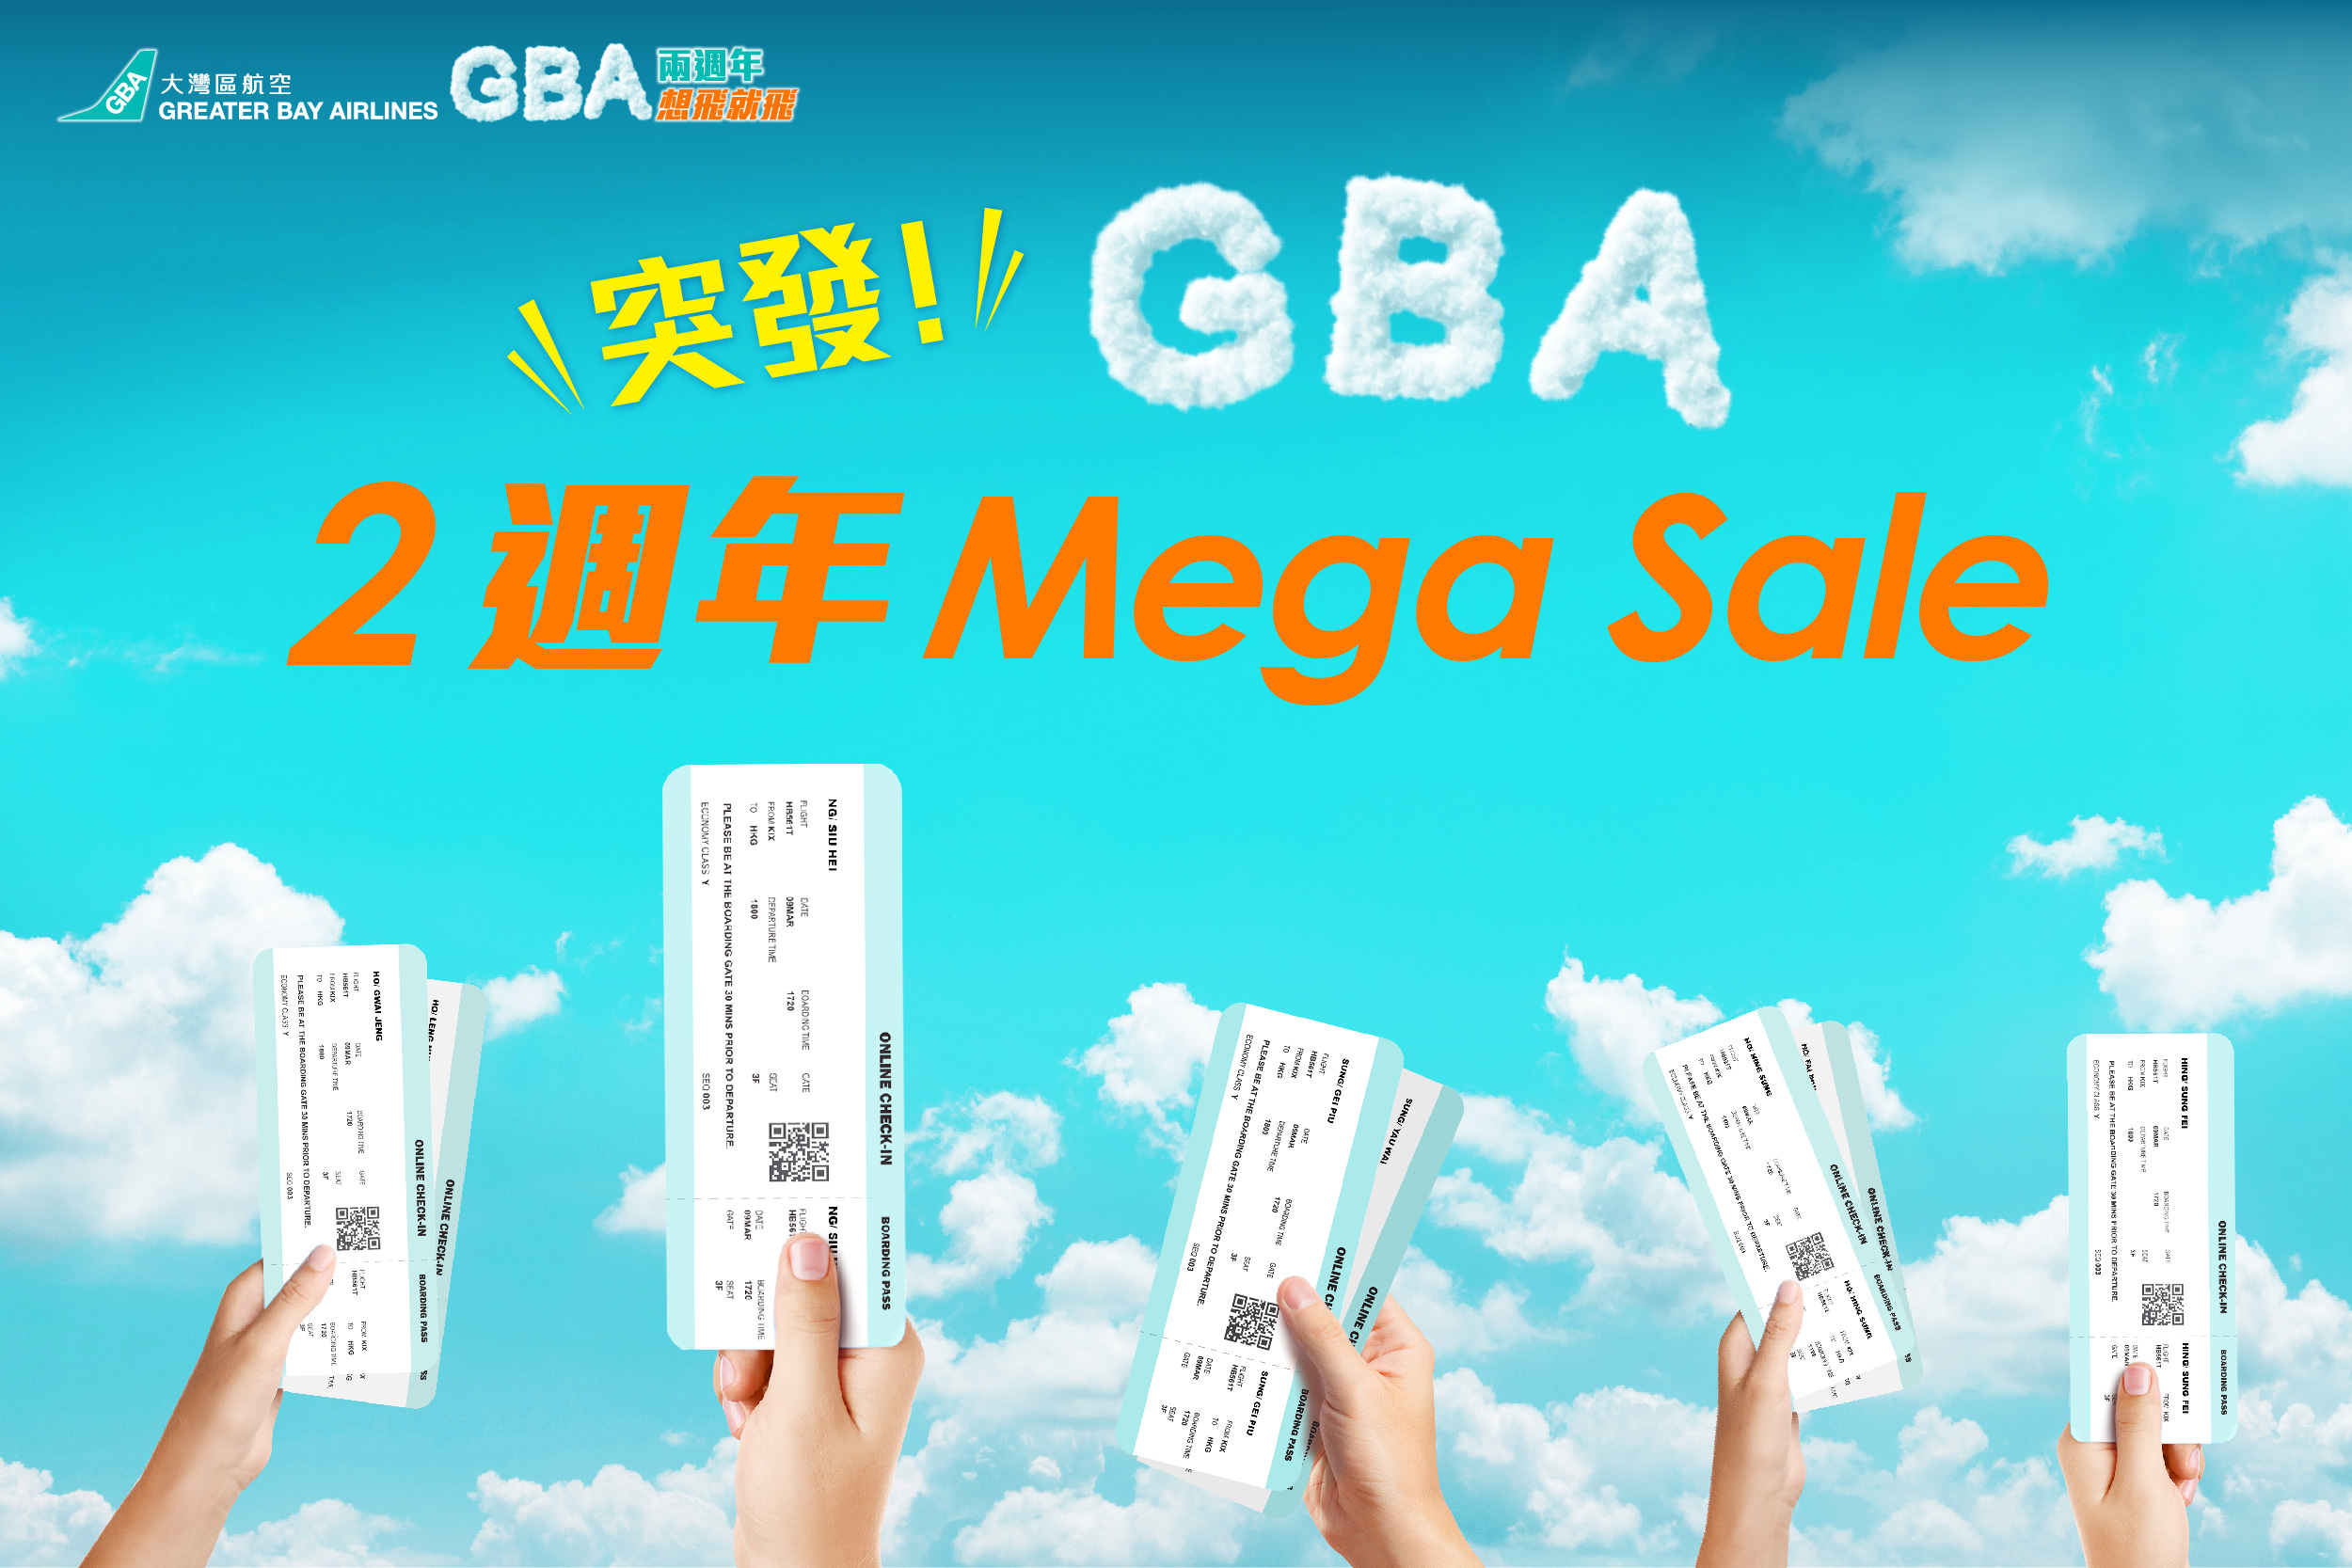 大灣區航空推出「2週年Mega Sale」優惠 多個亞洲航點來回機票僅需港幣20元 